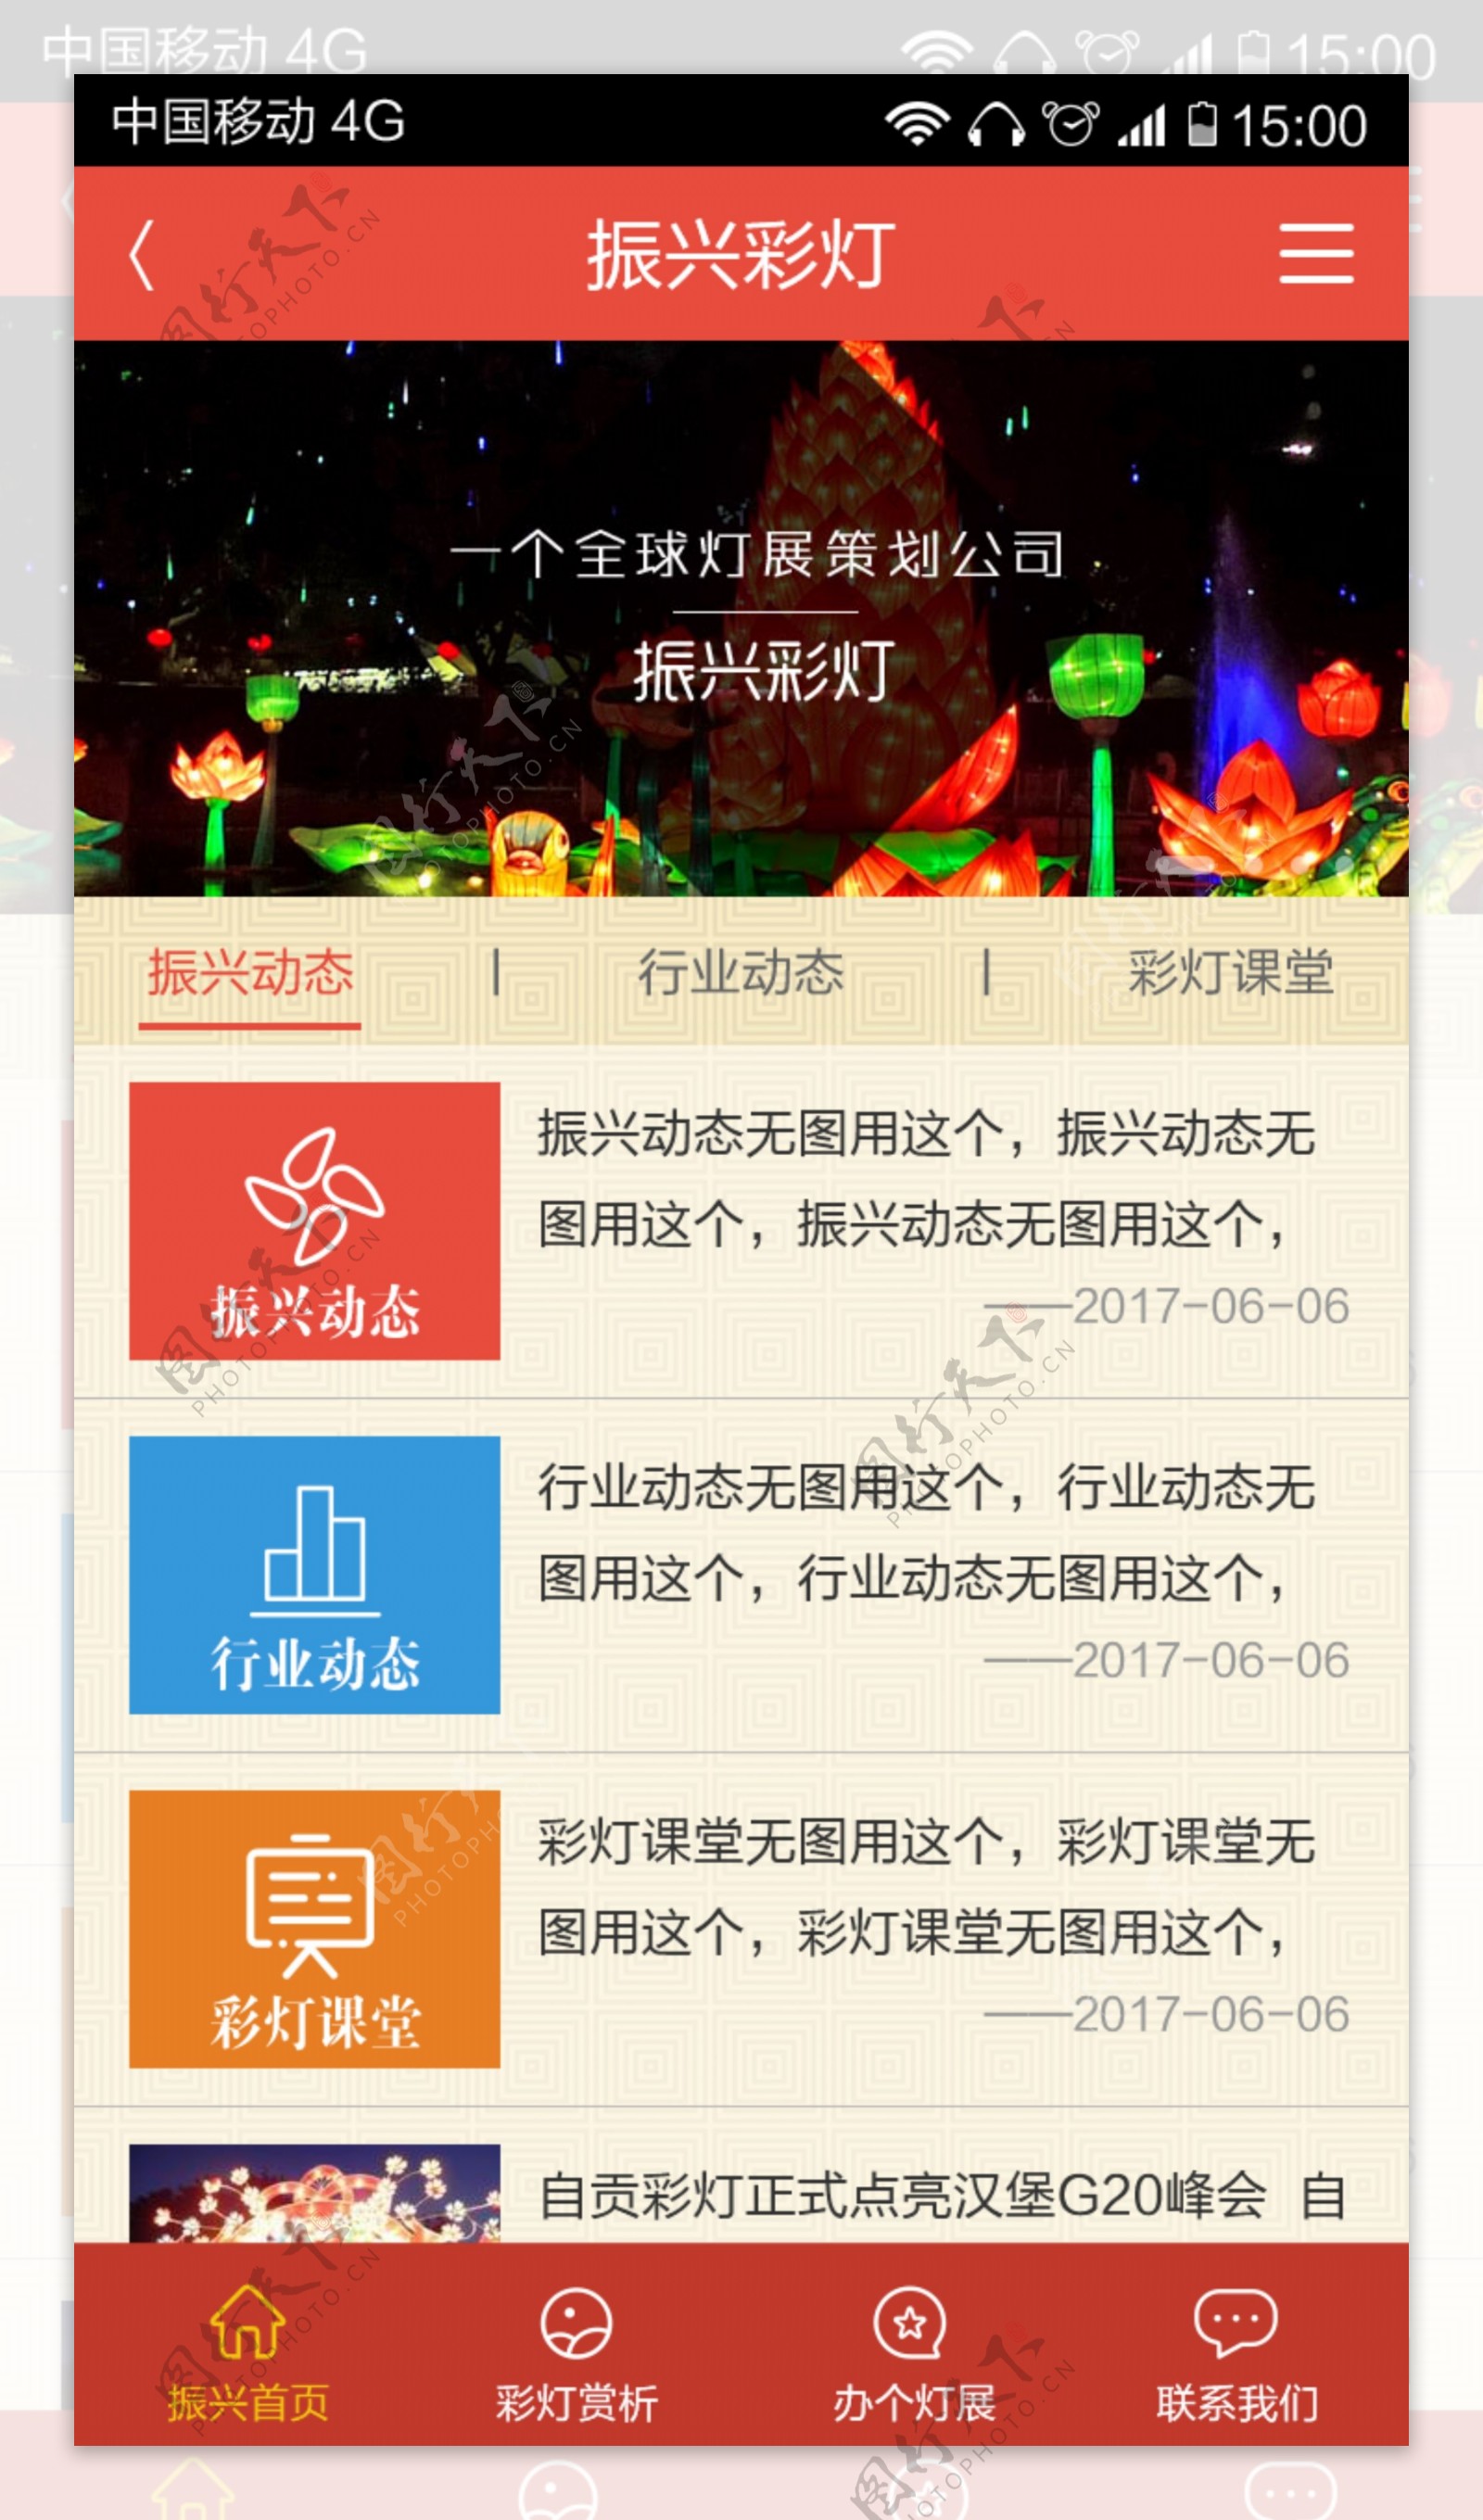 传统中国风彩灯APP手机网页新闻列表页面